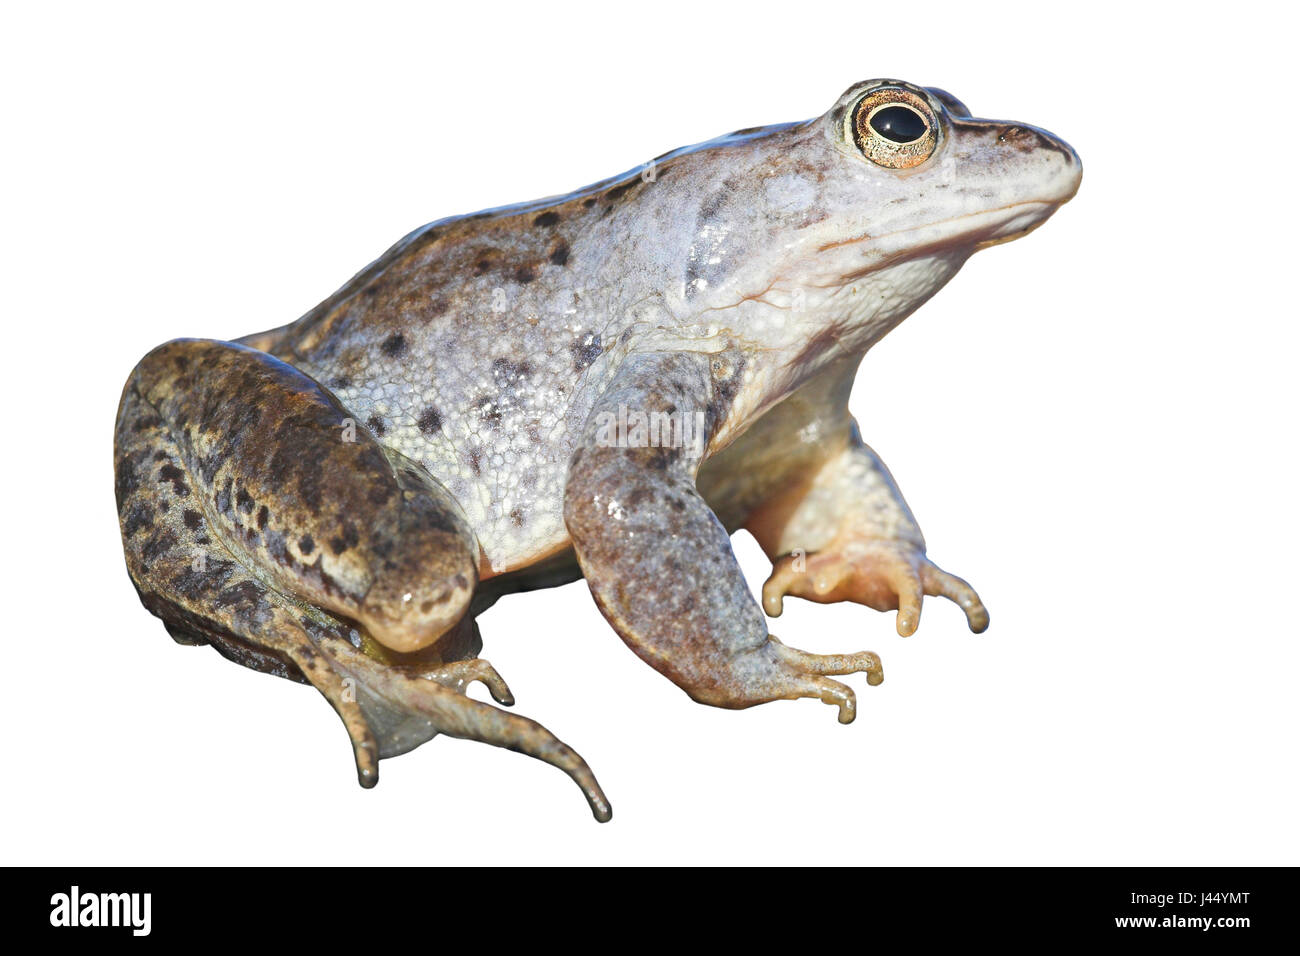 Moor frog contro uno sfondo bianco (resa) Foto Stock